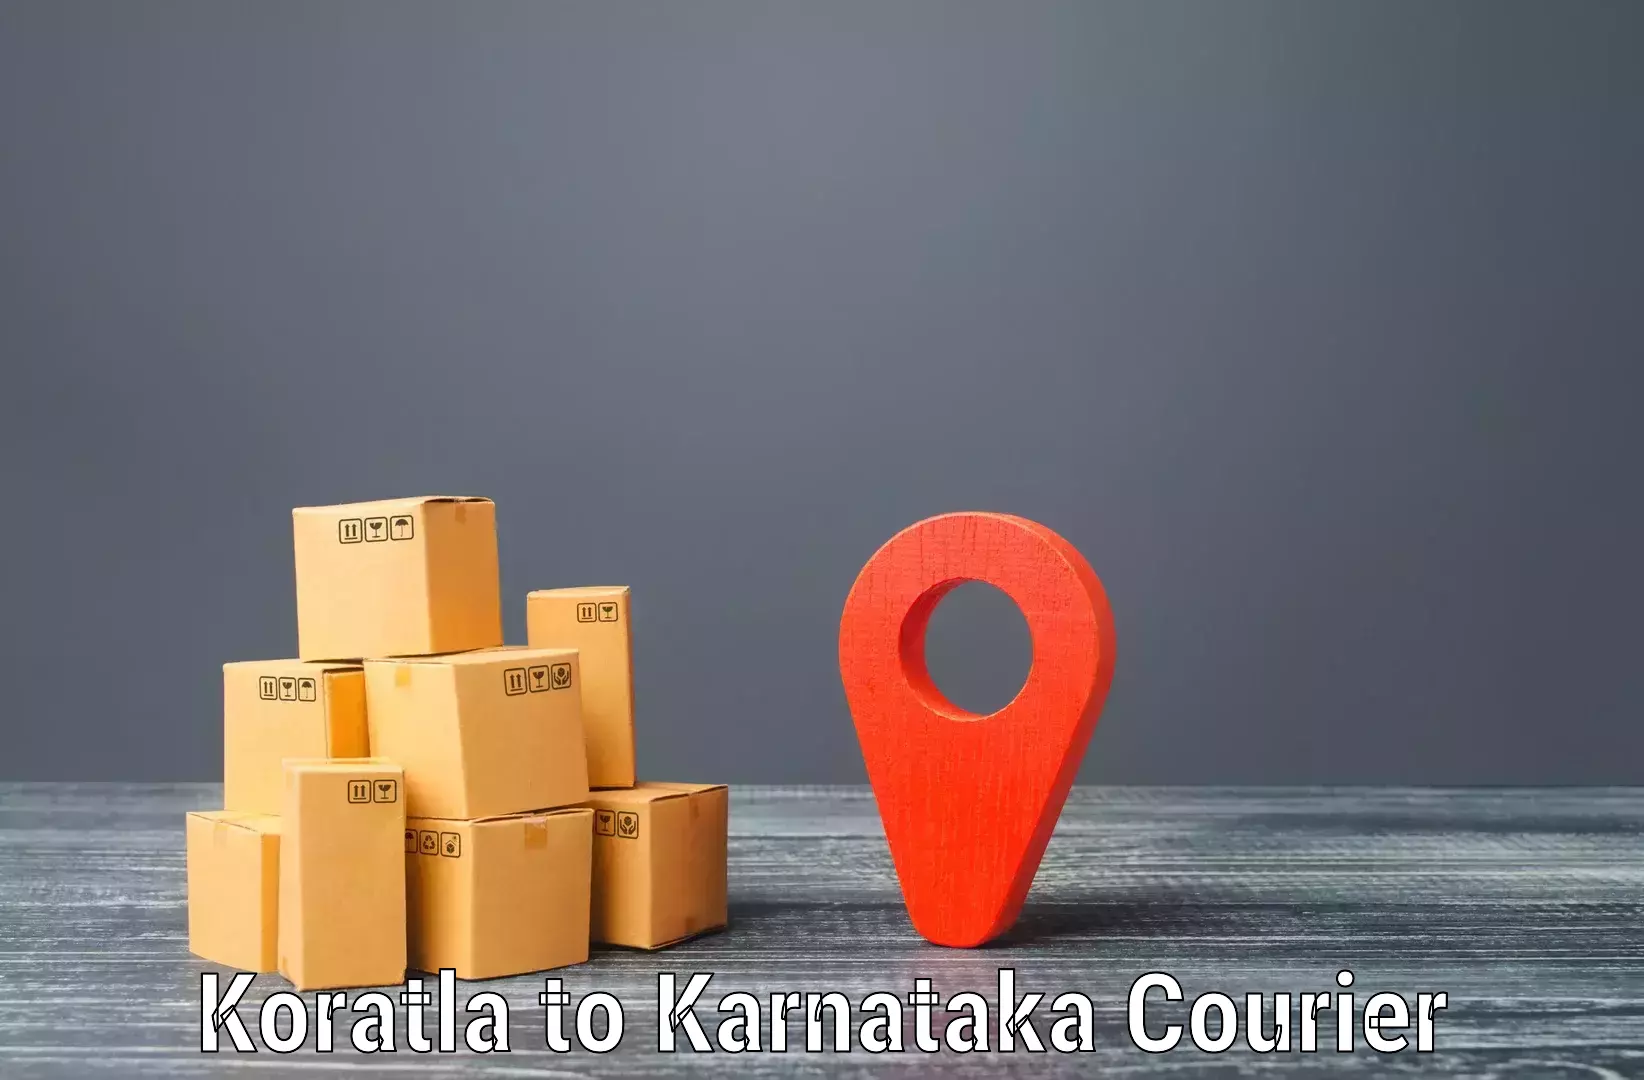 Customer-centric shipping Koratla to Chamarajanagar